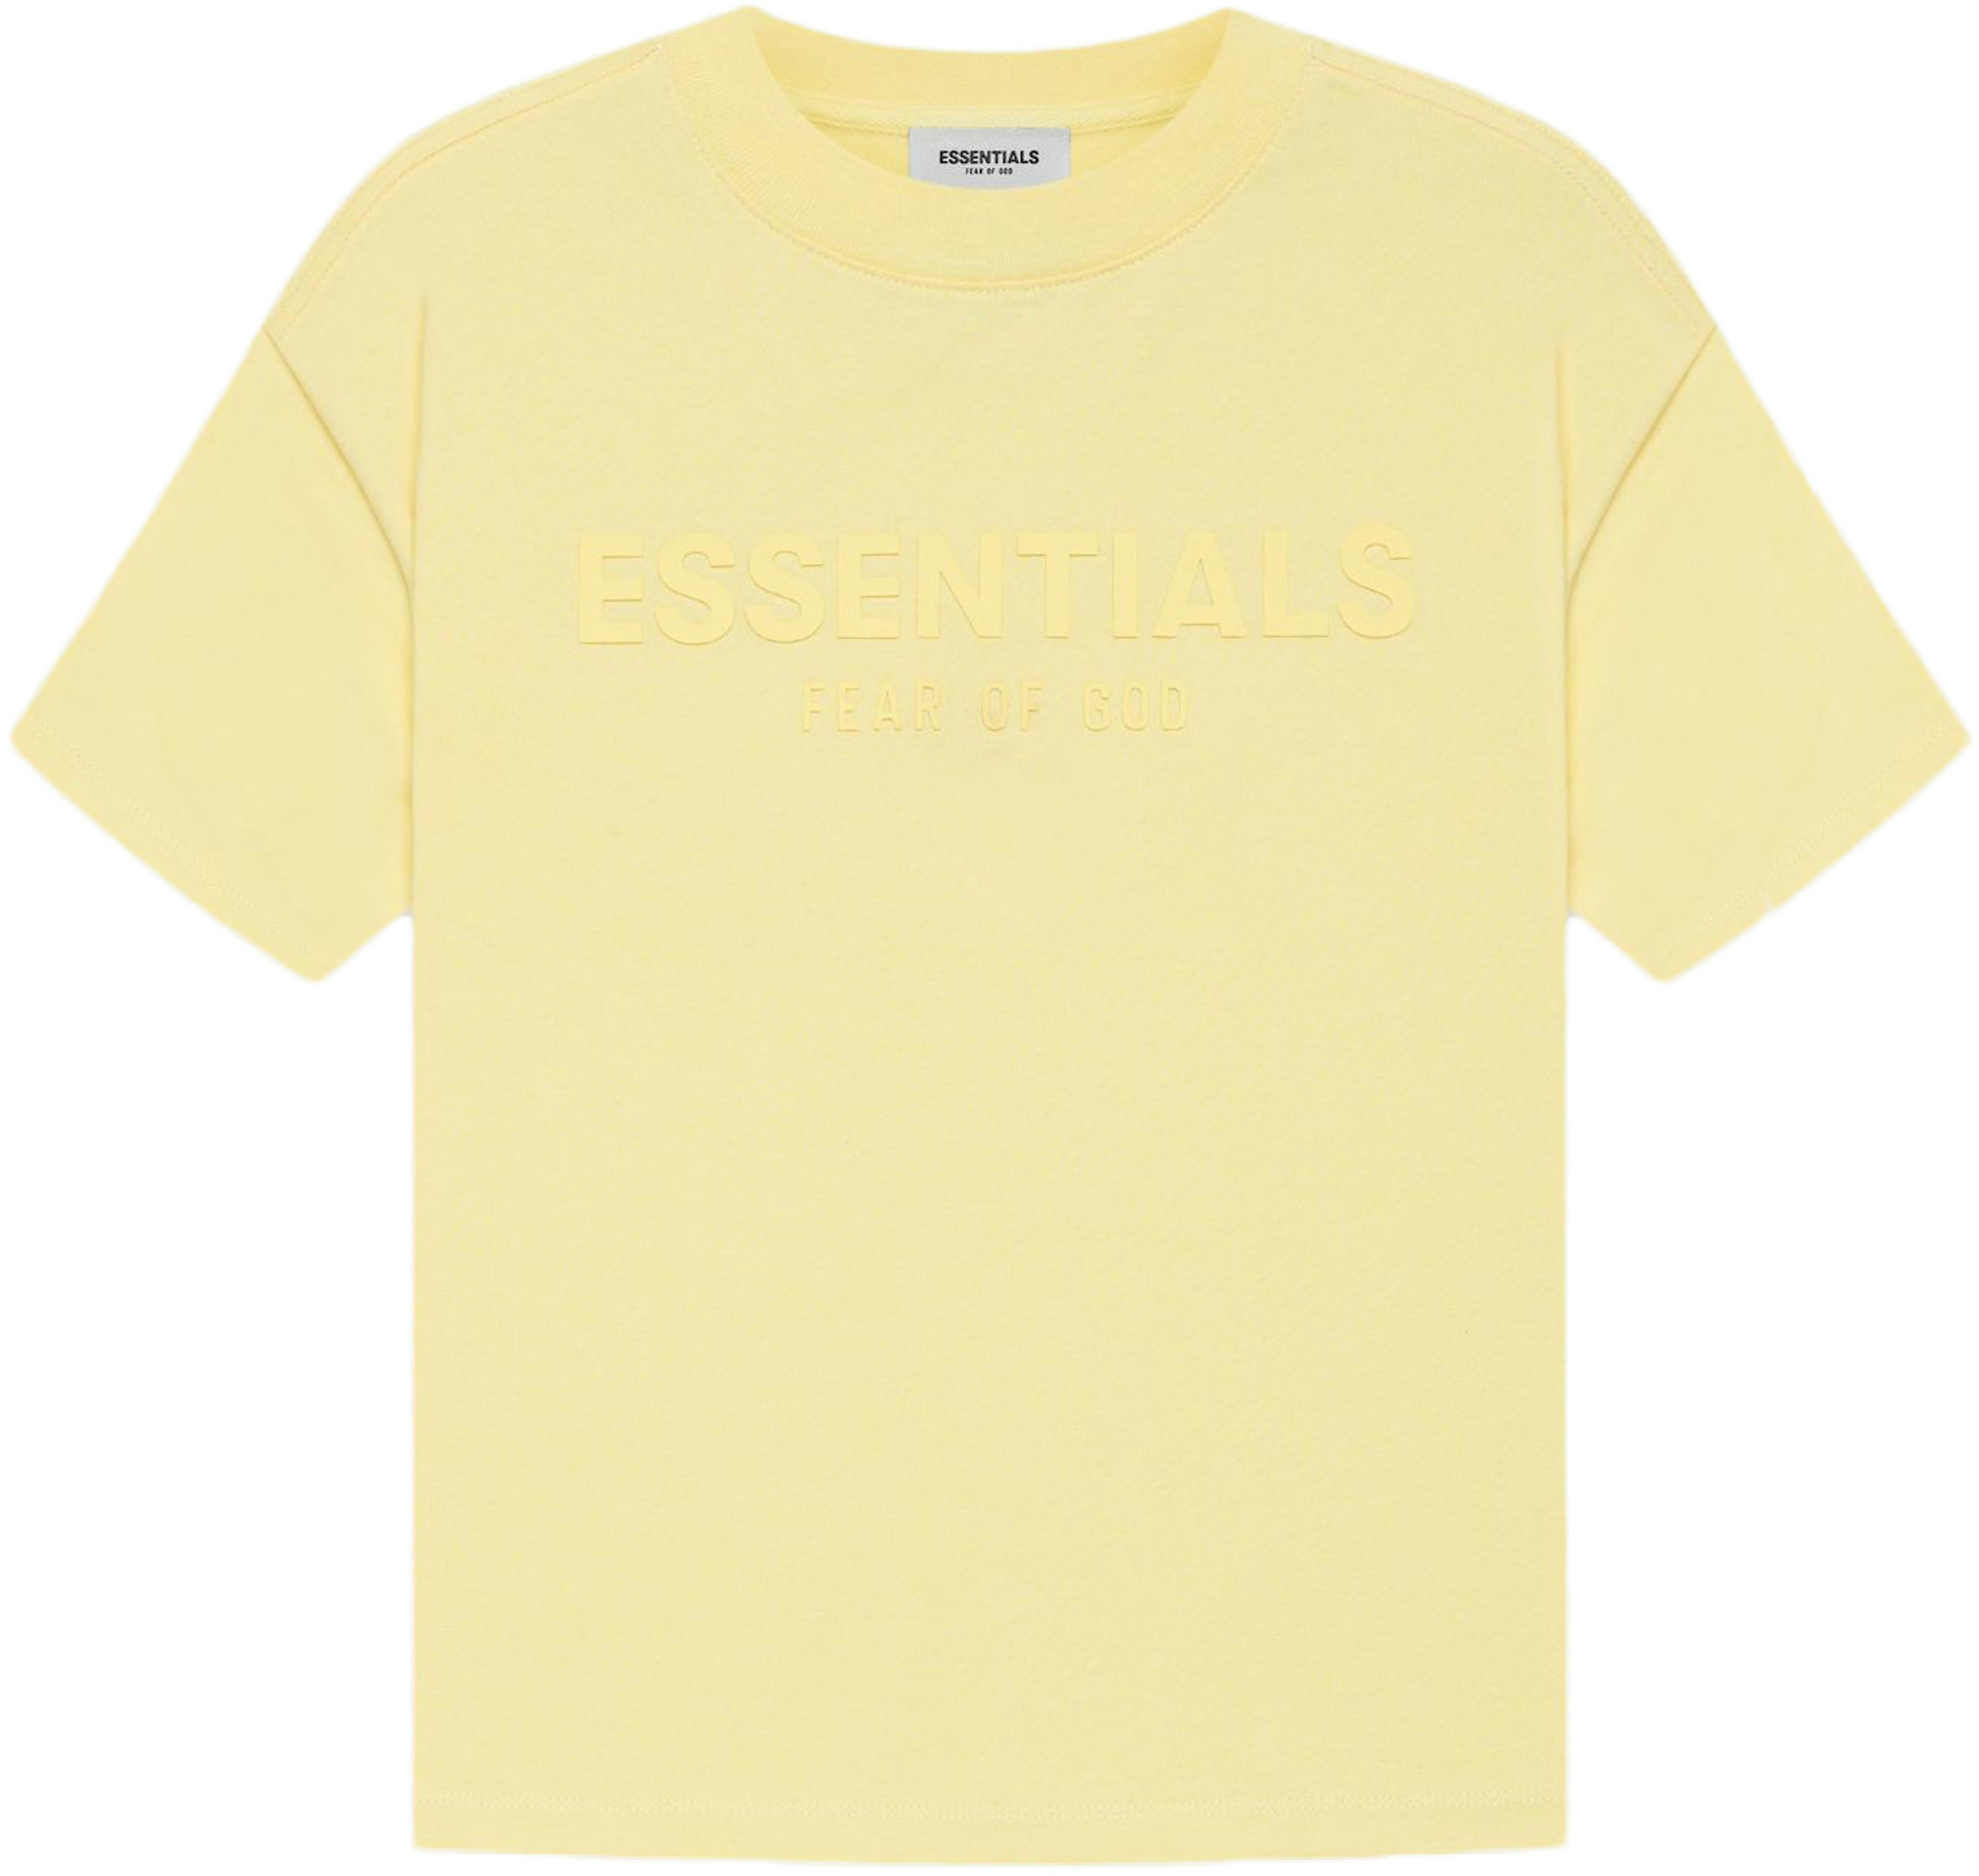 FEAR OF GOD ESSENTIALS Kids T-shirt Yellow/Lemonade - SS21